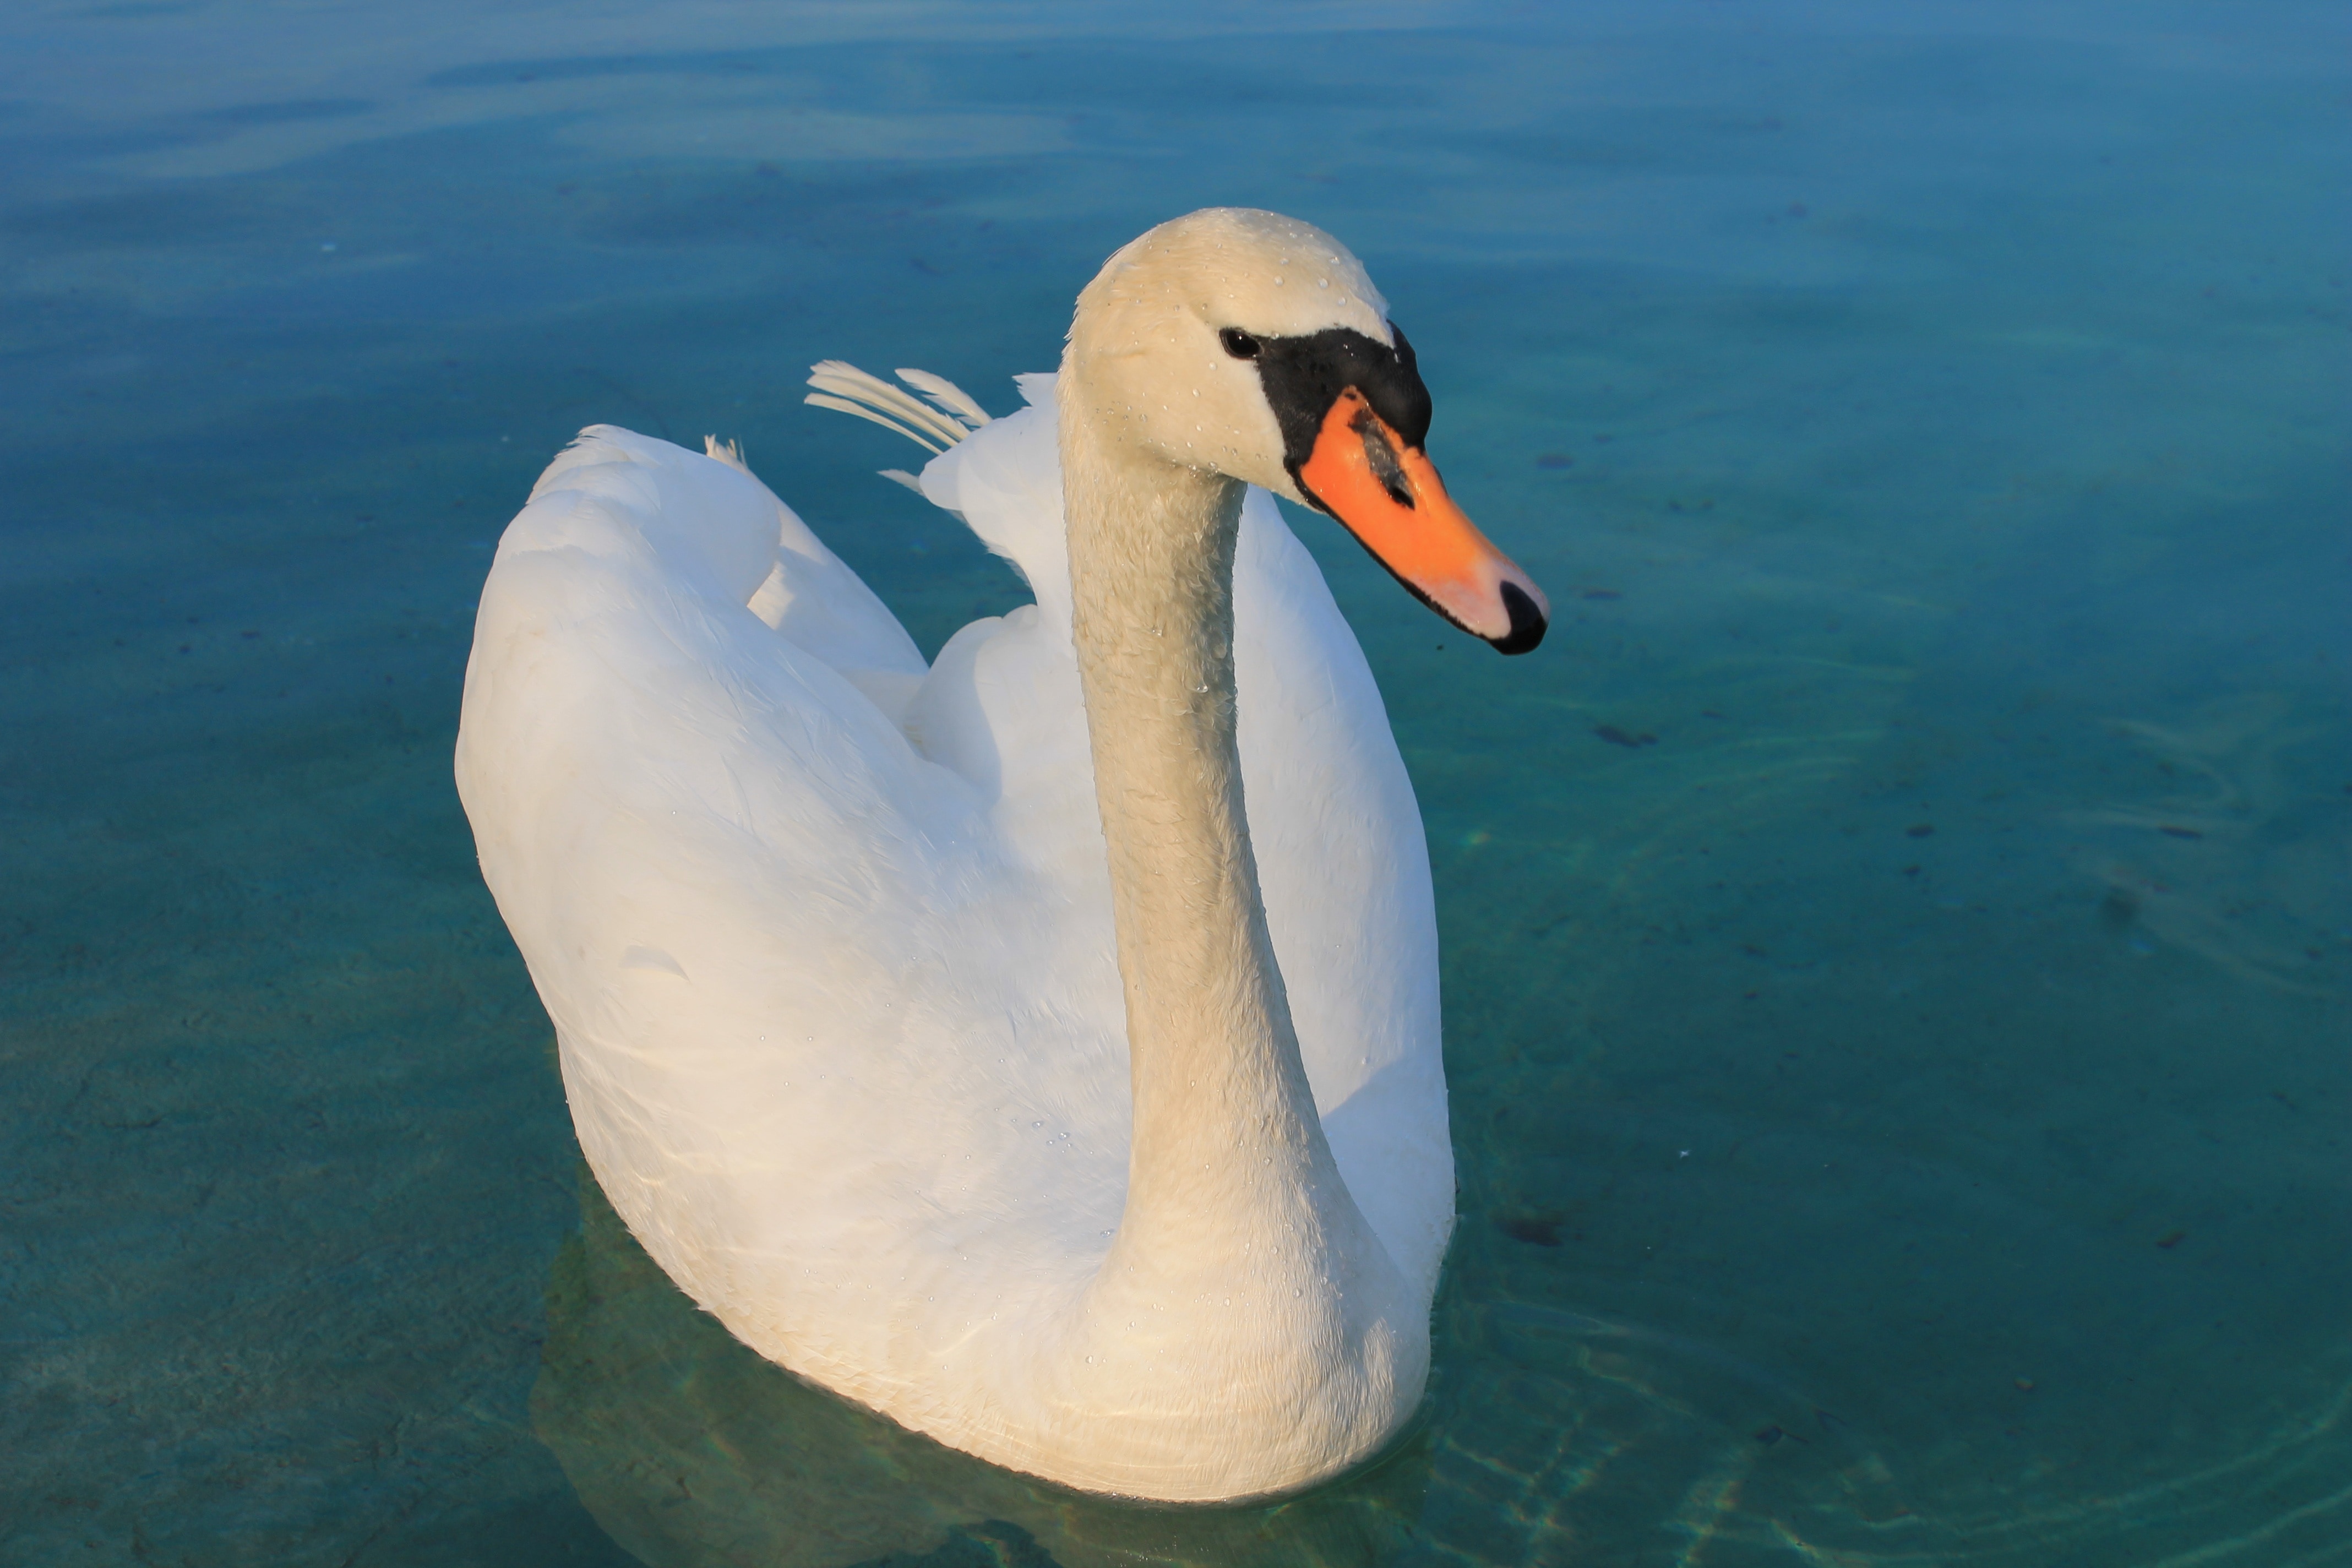 Lake, Graceful, Beautiful, Bird, Swan, one animal, animals in the wild